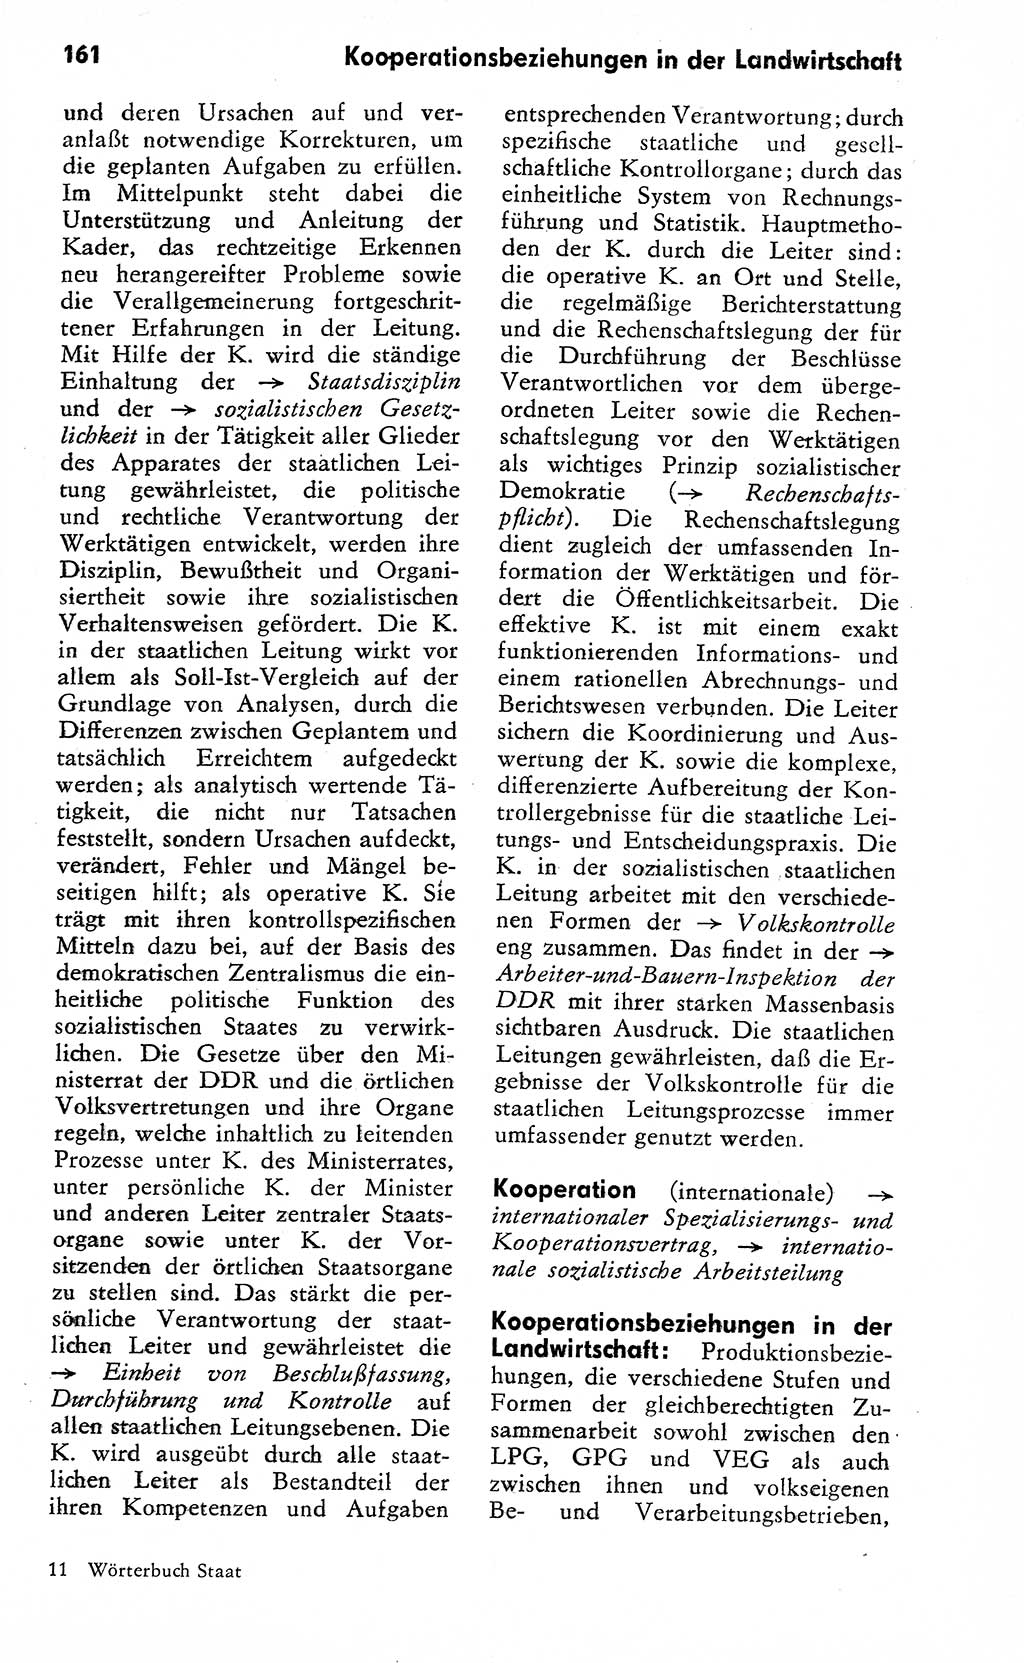 Wörterbuch zum sozialistischen Staat [Deutsche Demokratische Republik (DDR)] 1974, Seite 161 (Wb. soz. St. DDR 1974, S. 161)